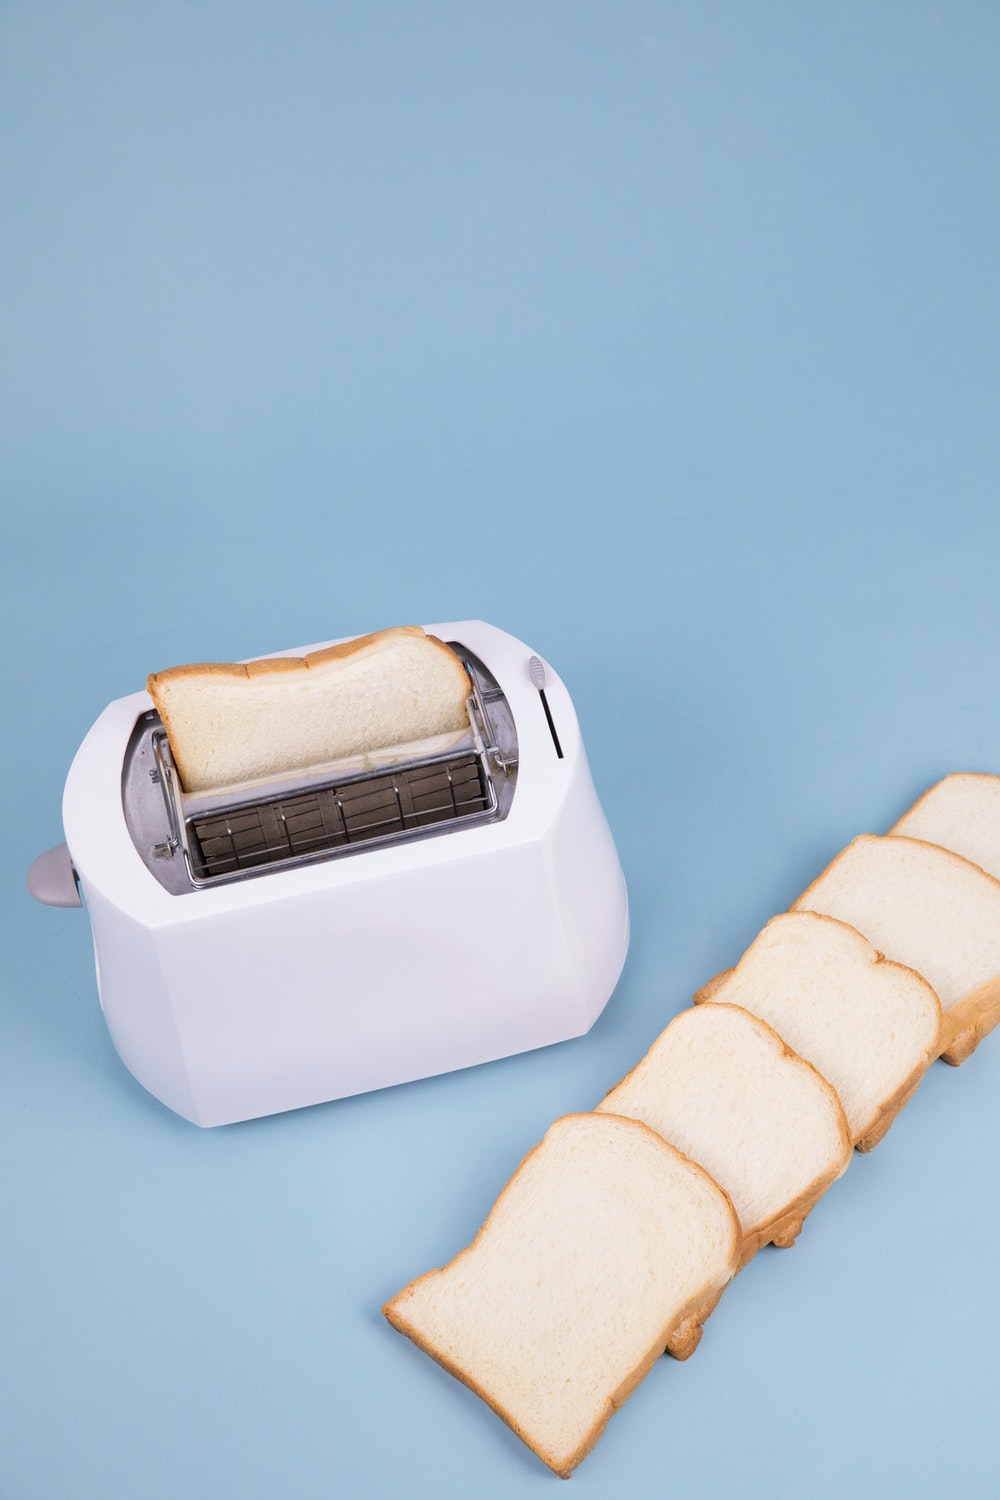 4 فوائد لجهاز محمصة الخبز وأهم أنواعه ومعايير اختياره